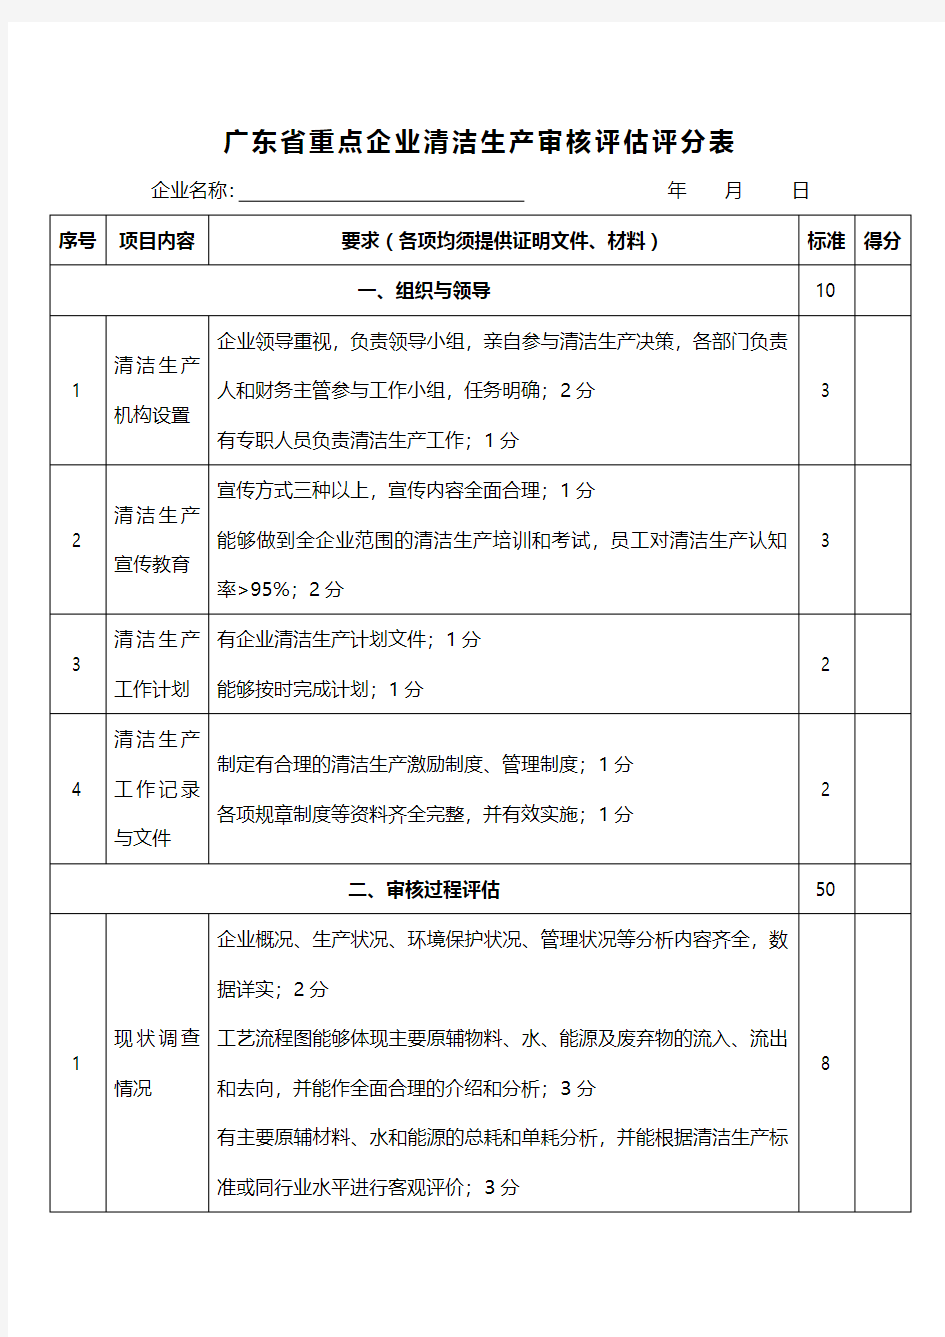 广东省重点企业清洁生产审核评估、验收工作流程